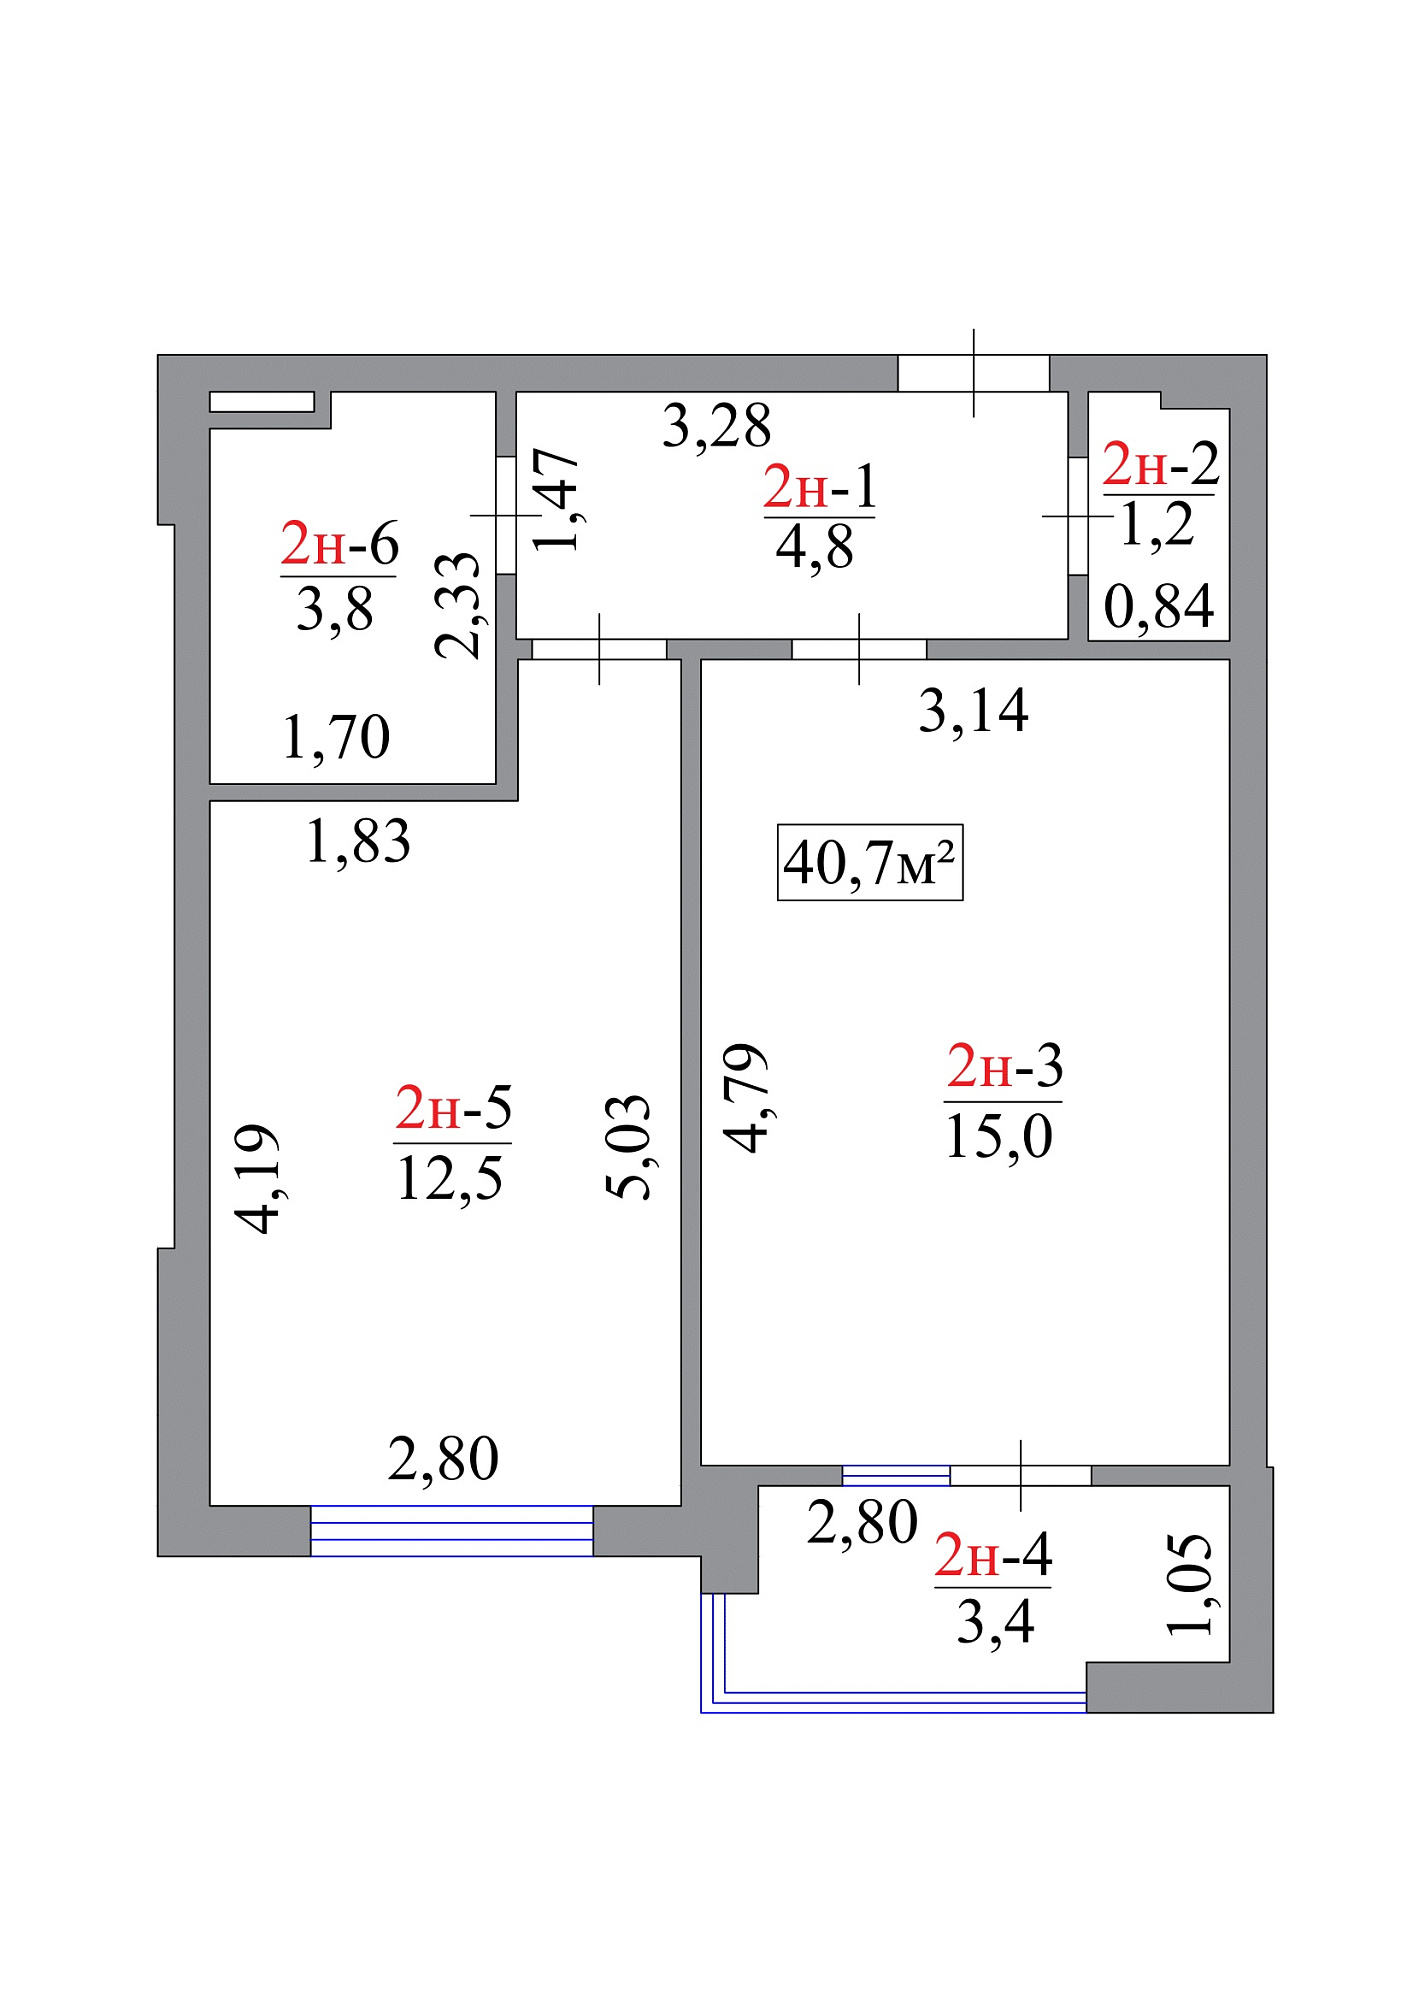 Планировка 1-к квартира площей 40.7м2, AB-07-01/00002.